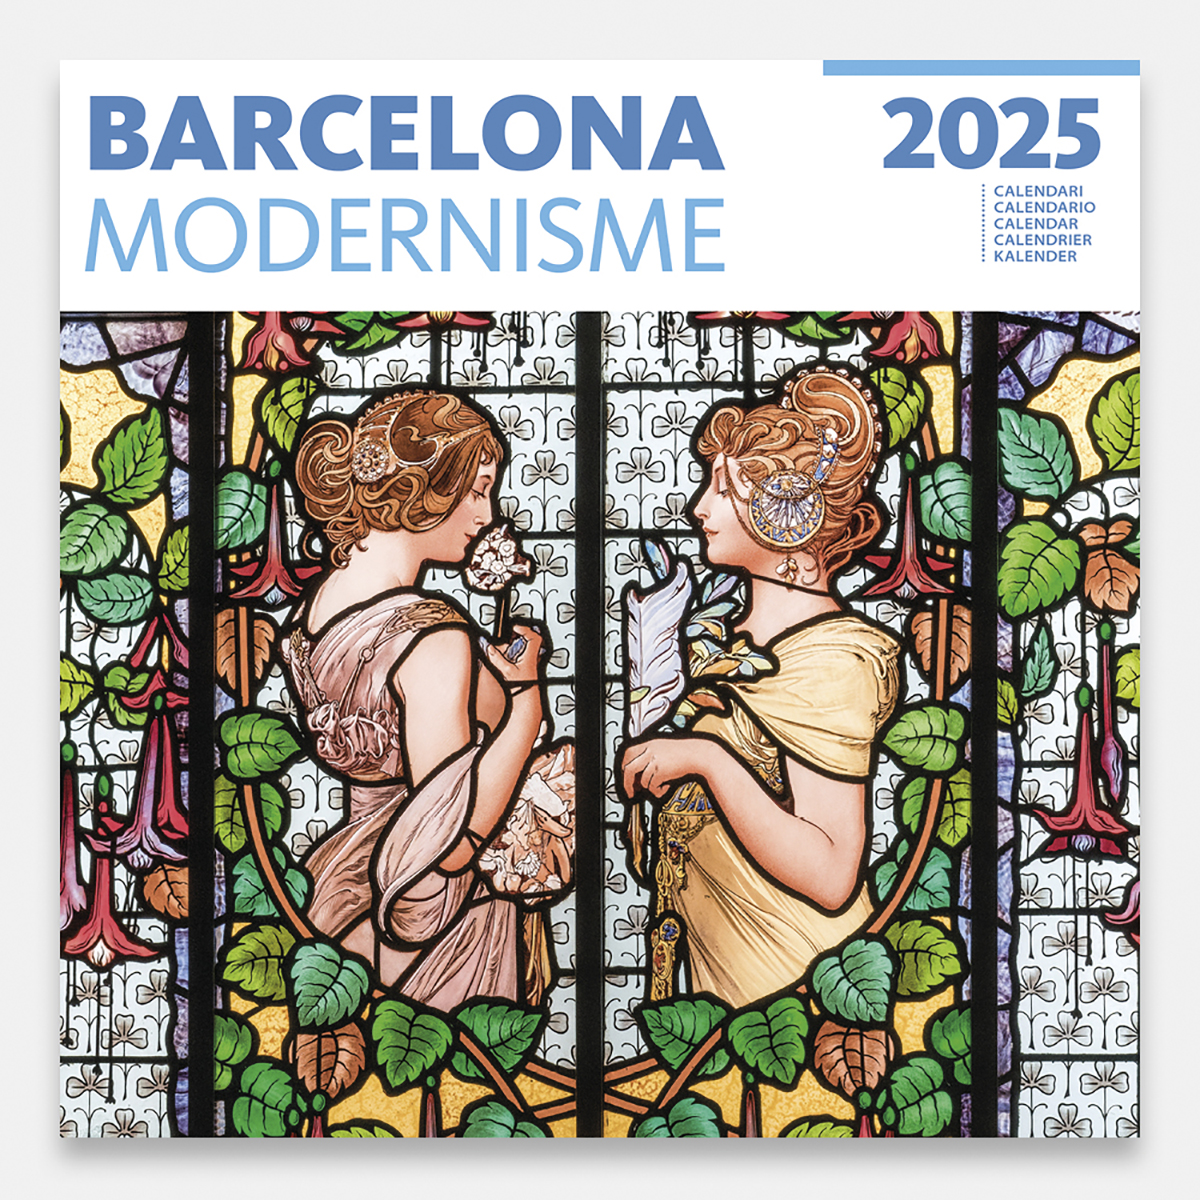 Calendari 2025 Modernisme 25modg calendario pared 2025 barcelona modernismo modernisme